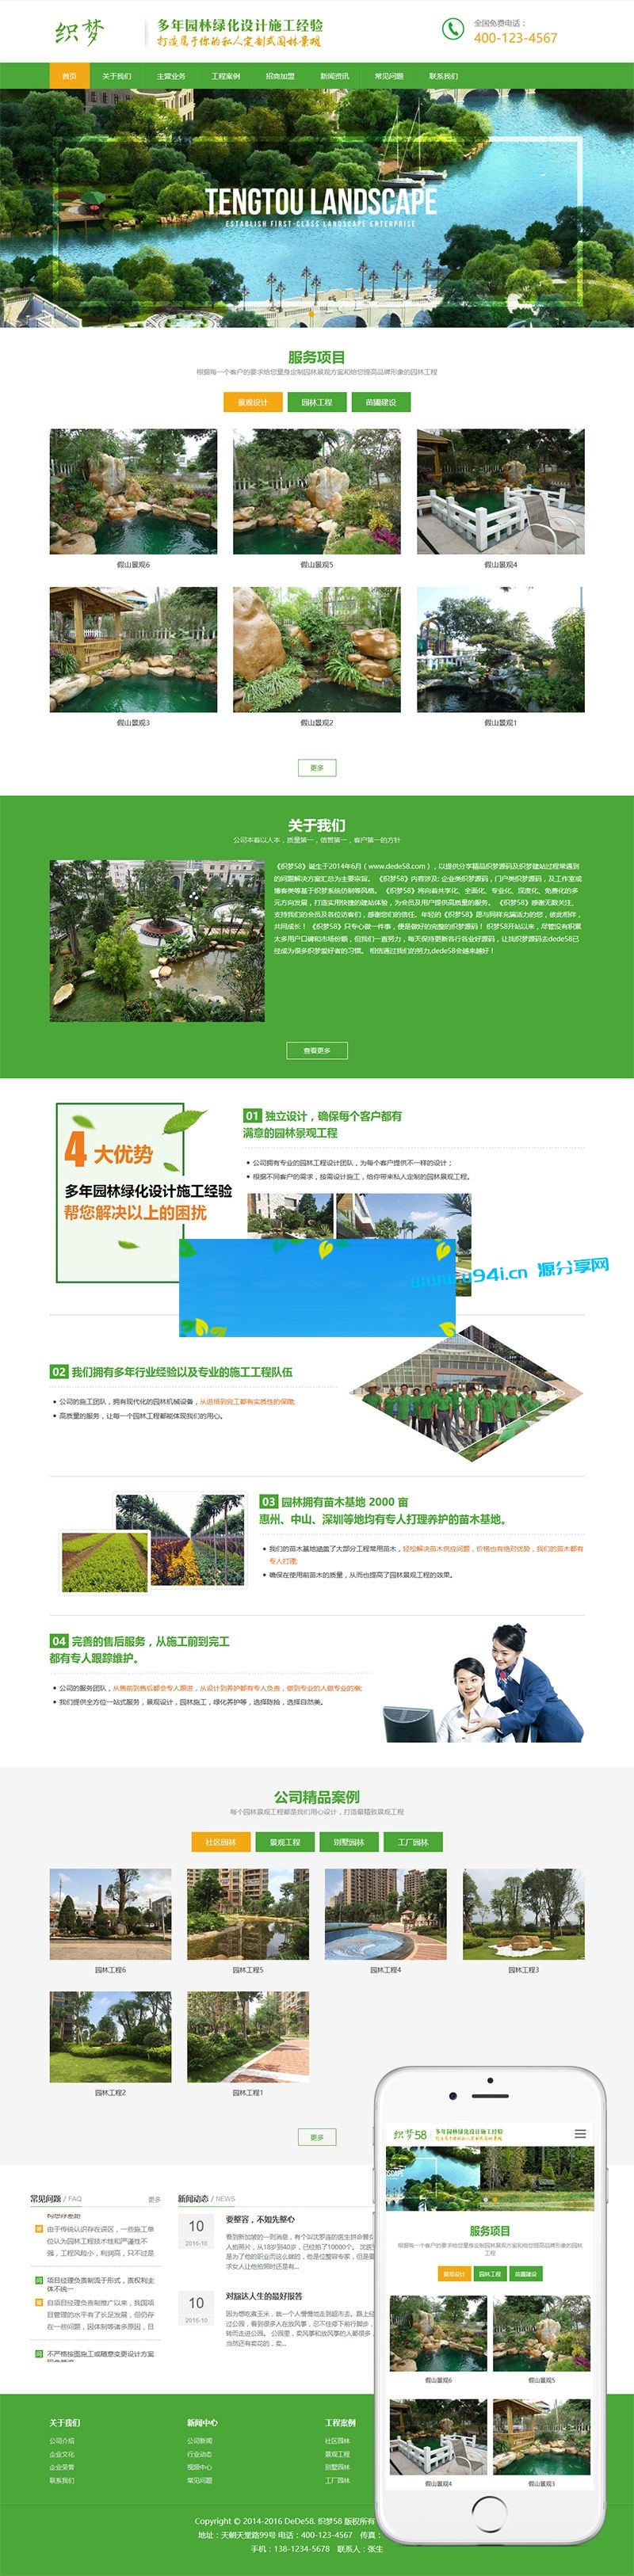 织梦dedecms响应式绿色清新园林绿化设计施工公司网站模板(自适应手机移动端)